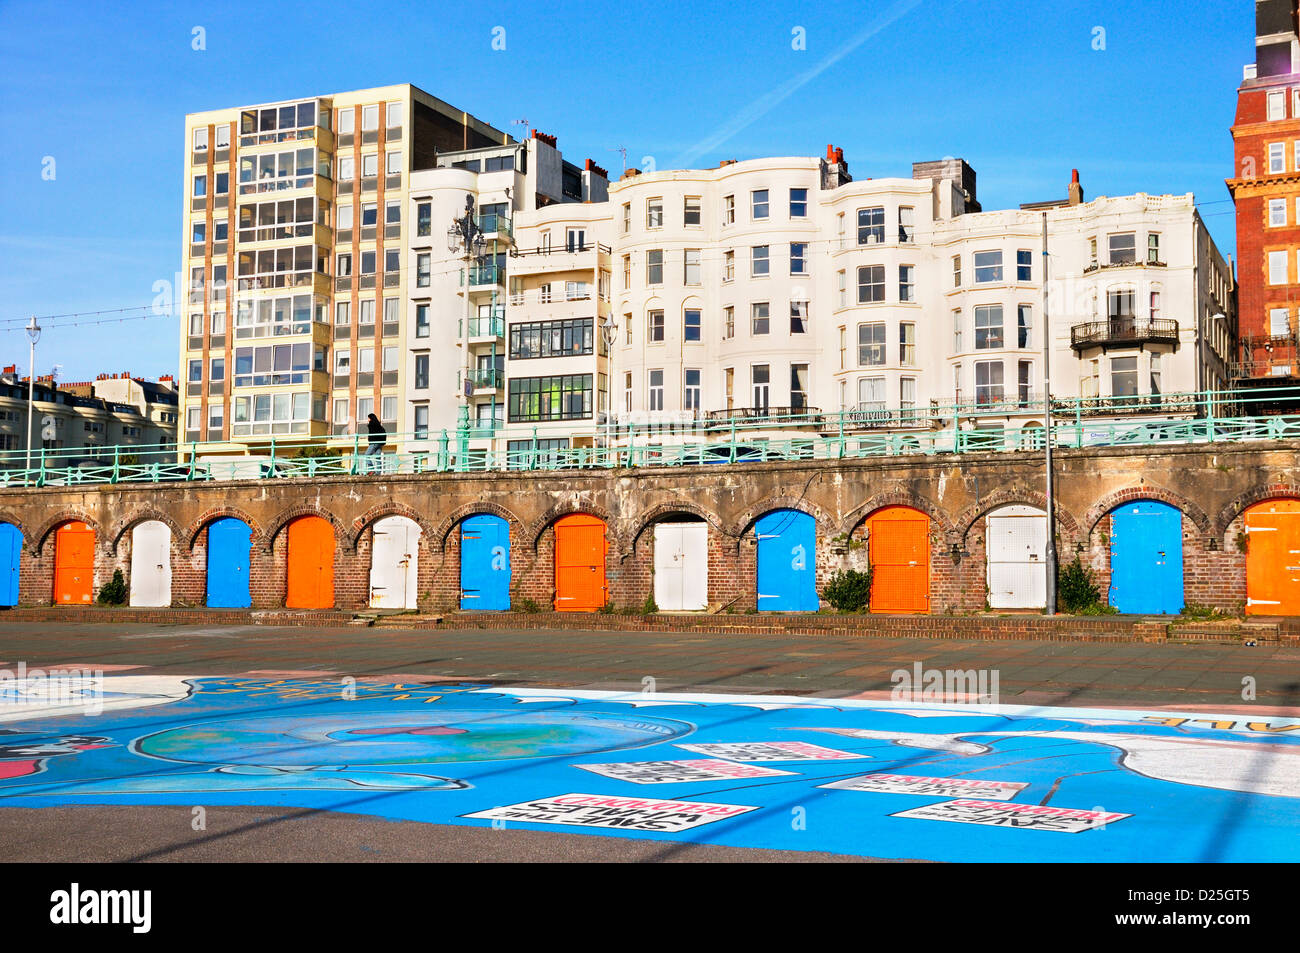 King's Road Arches sur le front de mer de Brighton, East Sussex, UK Banque D'Images